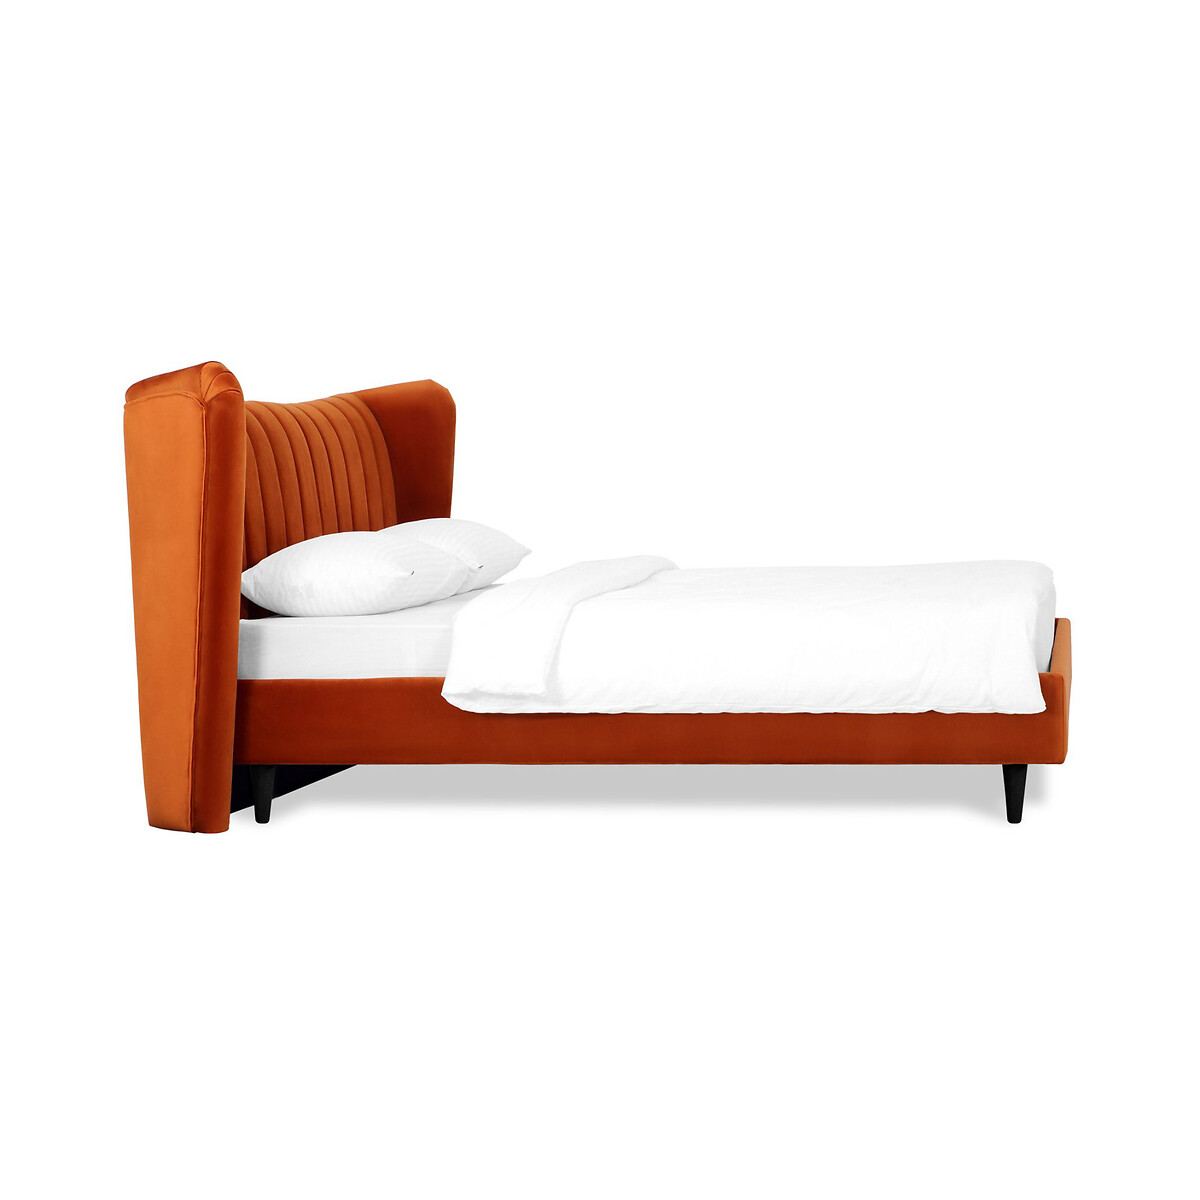 Кровать Queen II Agata L 160 x 200 см оранжевый LaRedoute, размер 160 x 200 см - фото 3